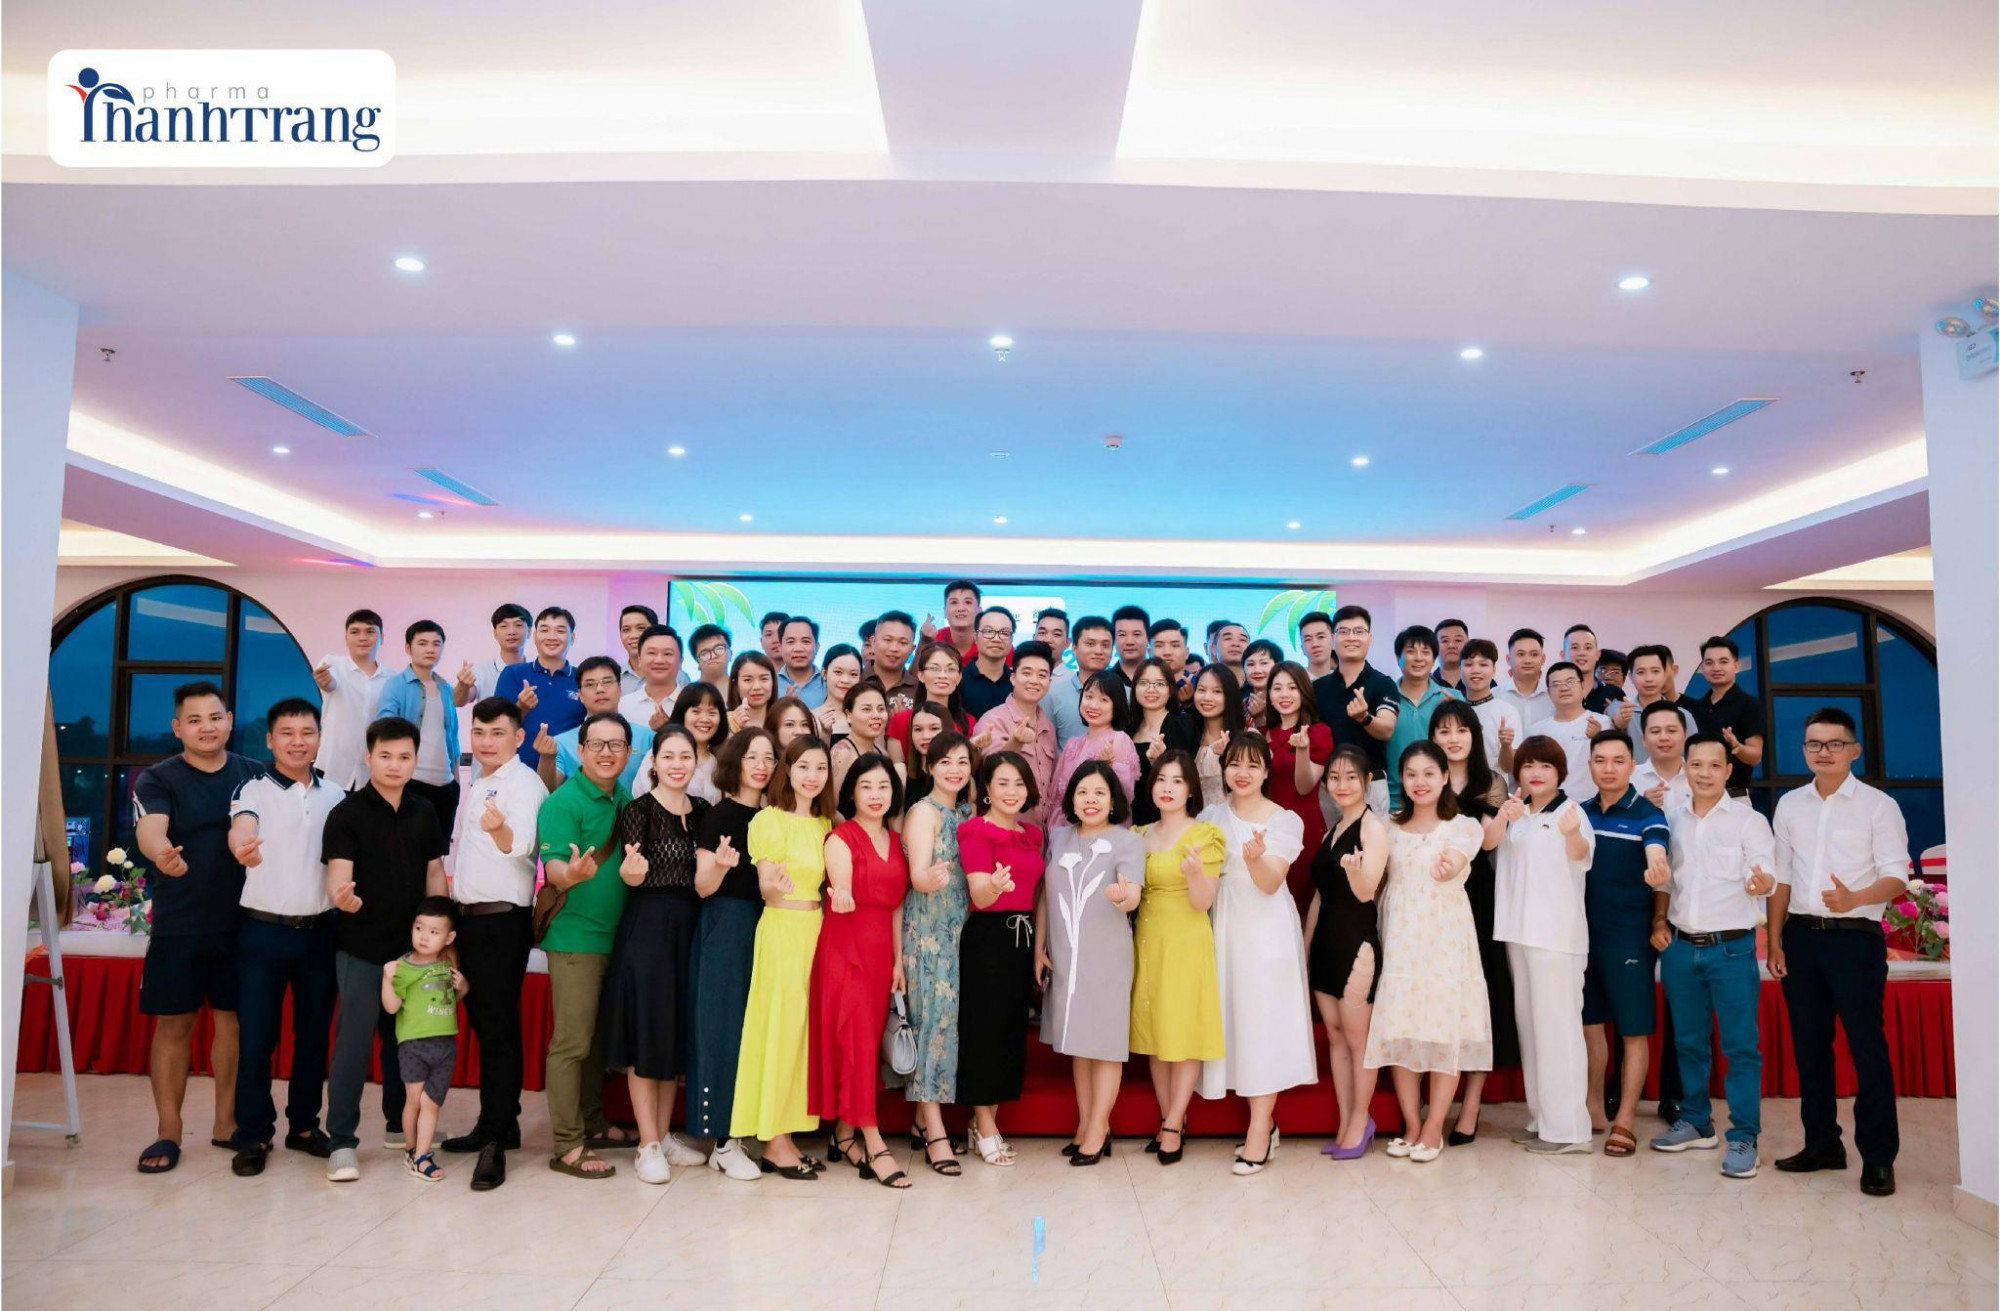 Hình ảnh chụp tập thể Công ty Thanh Trang tại đêm gala chúc mừng sinh nhật nhân viên - Ảnh: Dược mỹ phẩm Thanh Trang